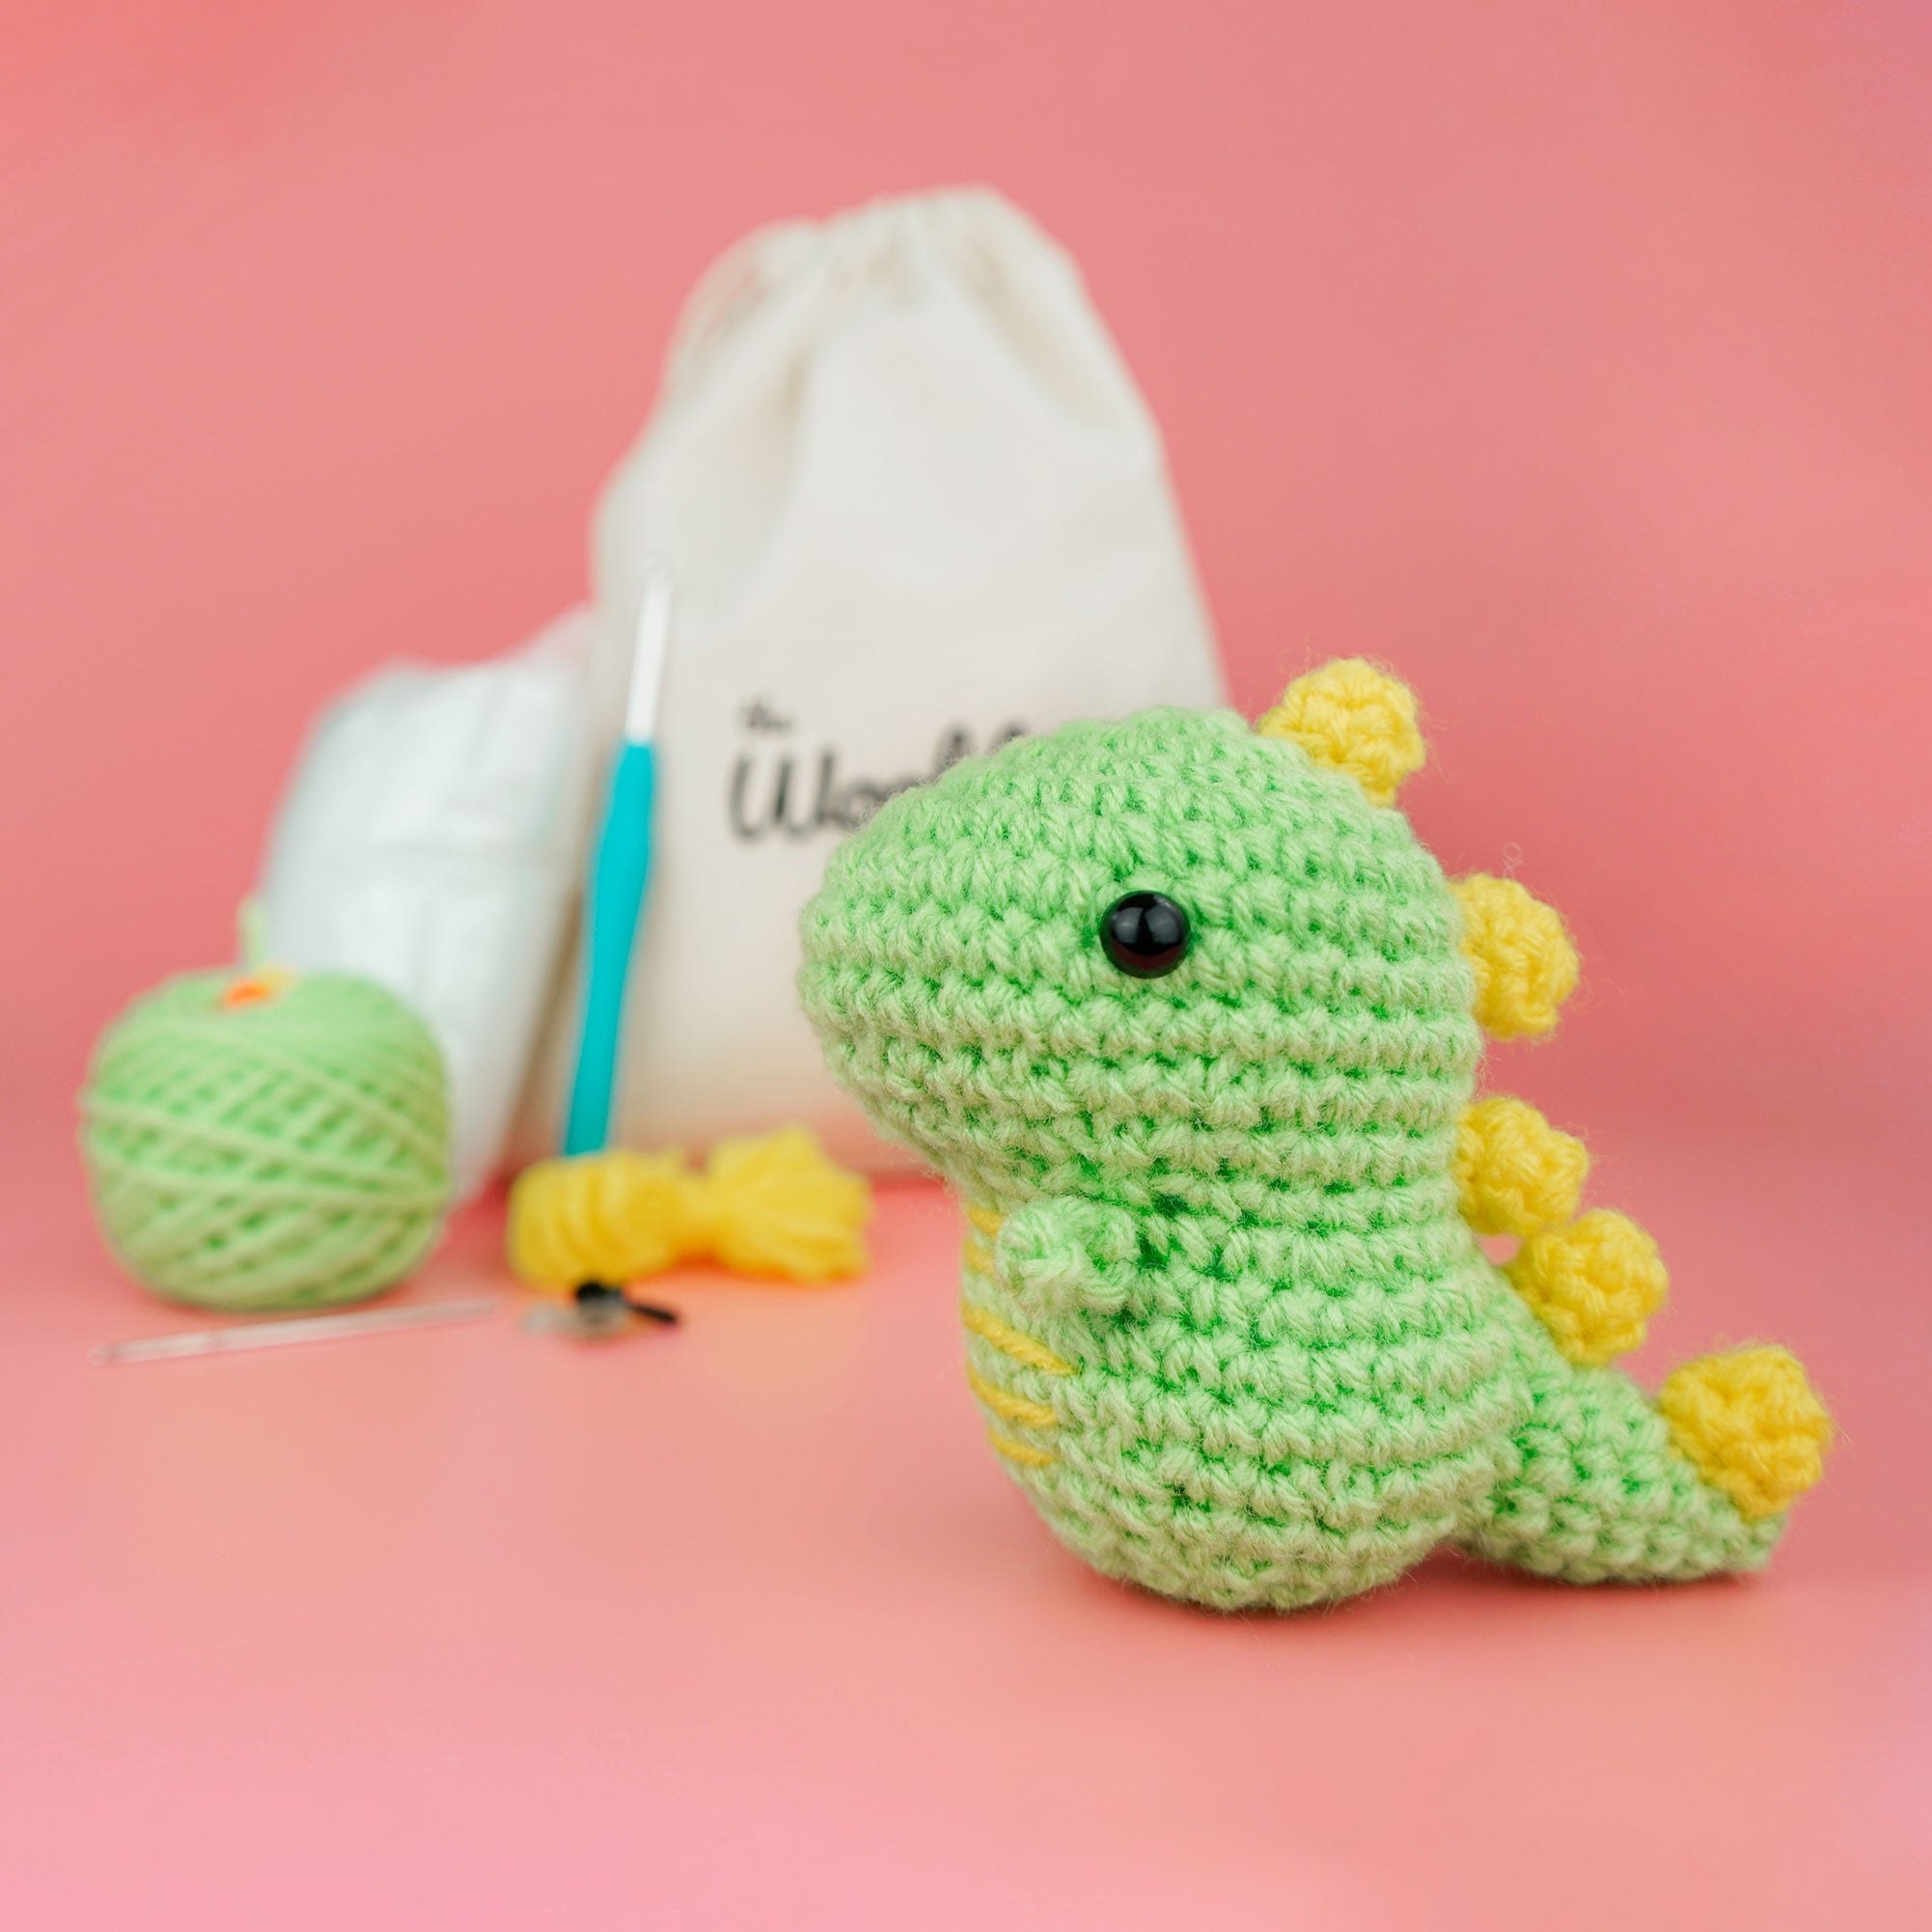 the crochet dinosaur